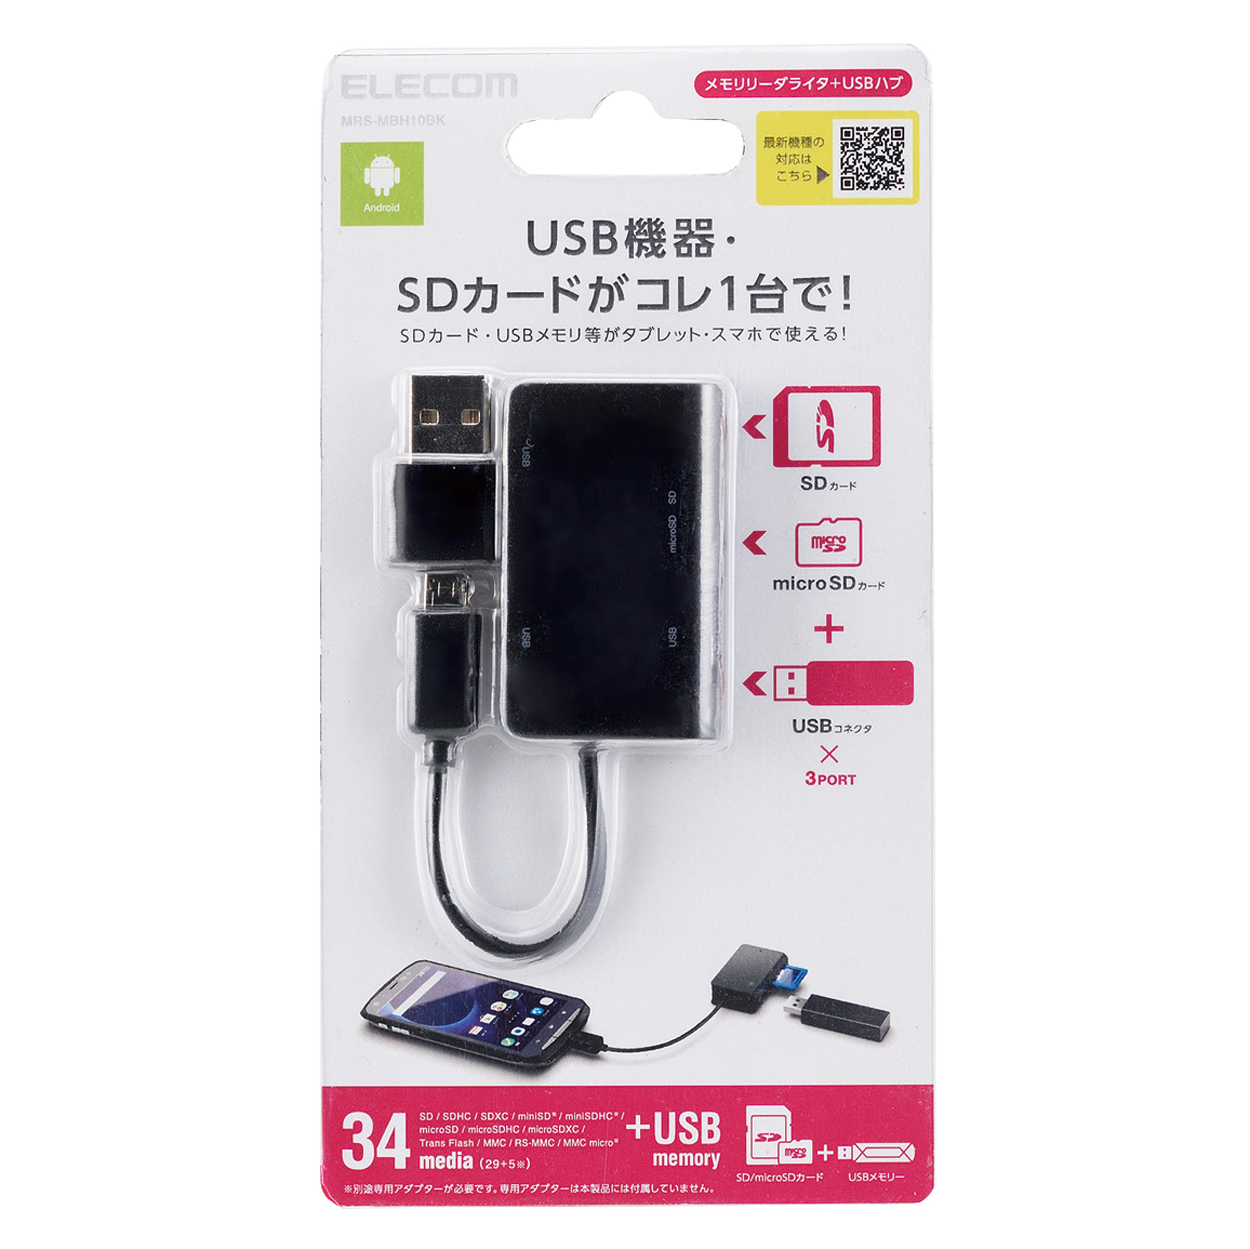 ■送料込 ELECOM メモリリーダライタ USB microB対応